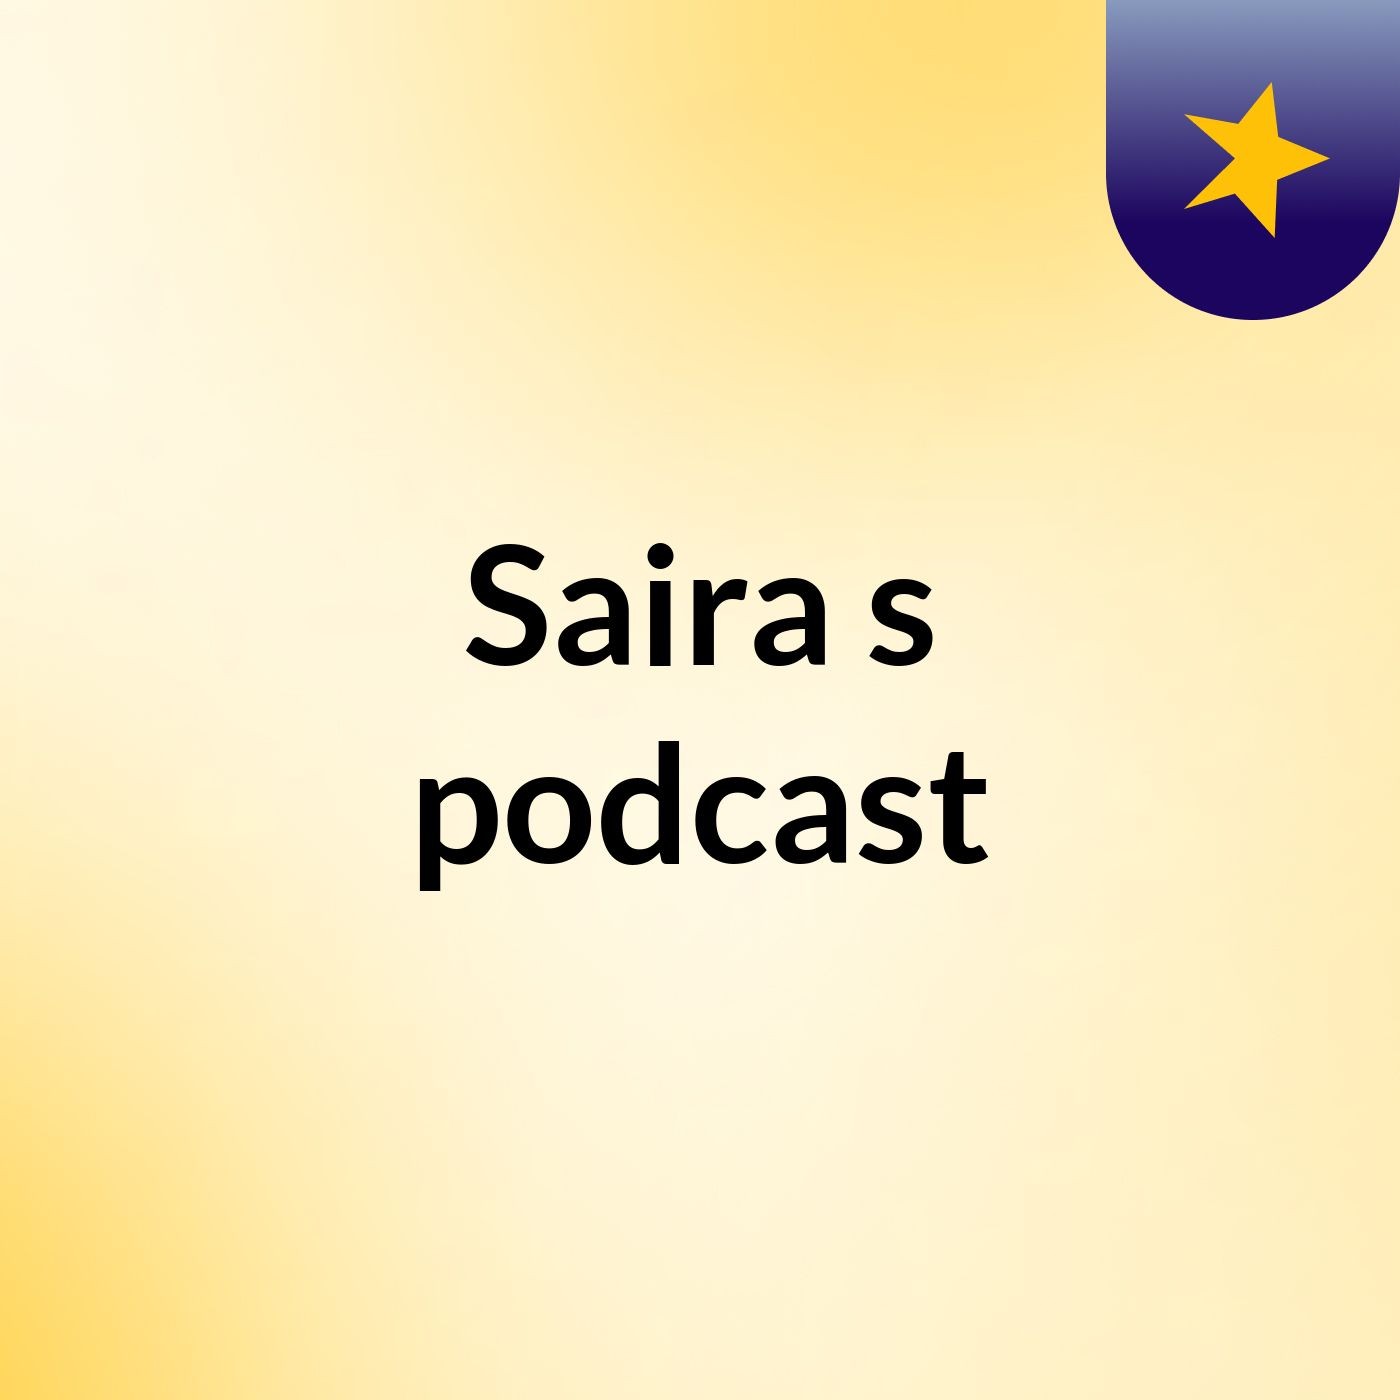 Saira's podcast